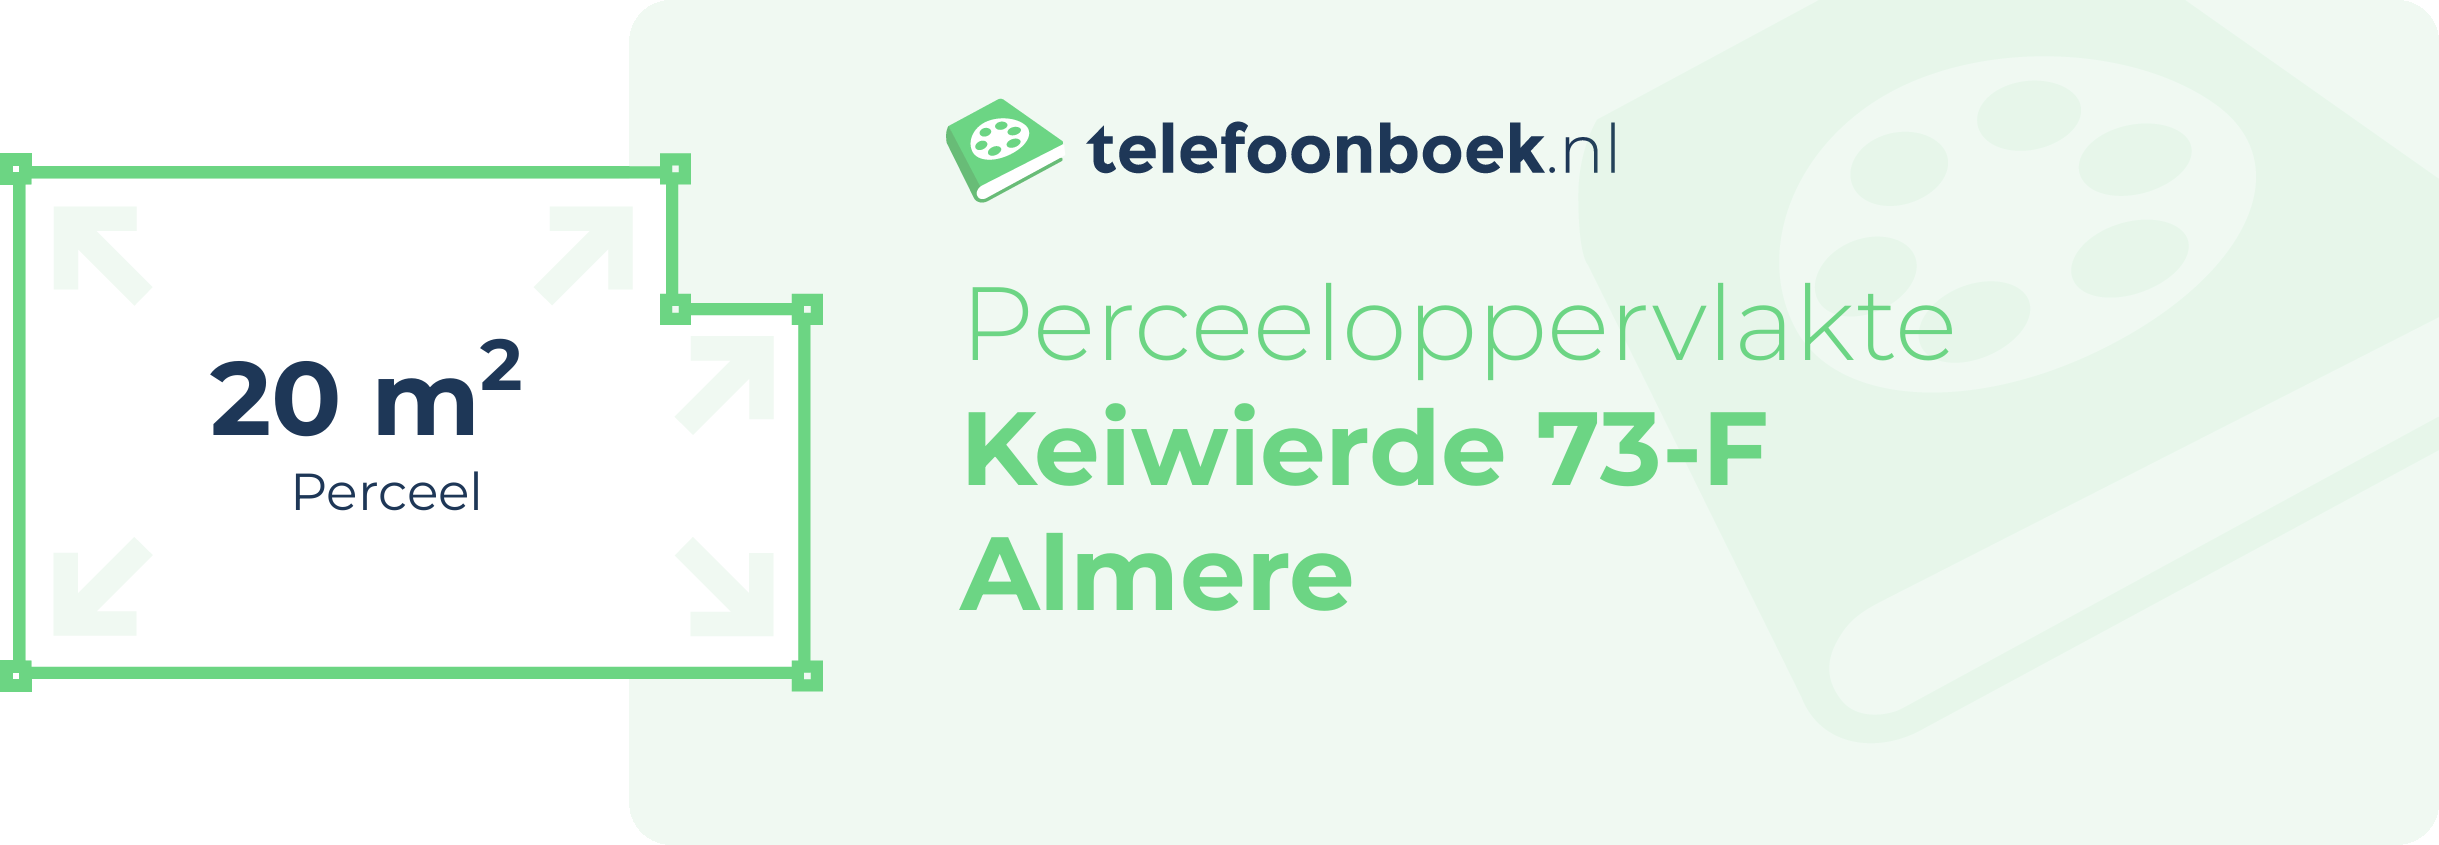 Perceeloppervlakte Keiwierde 73-F Almere